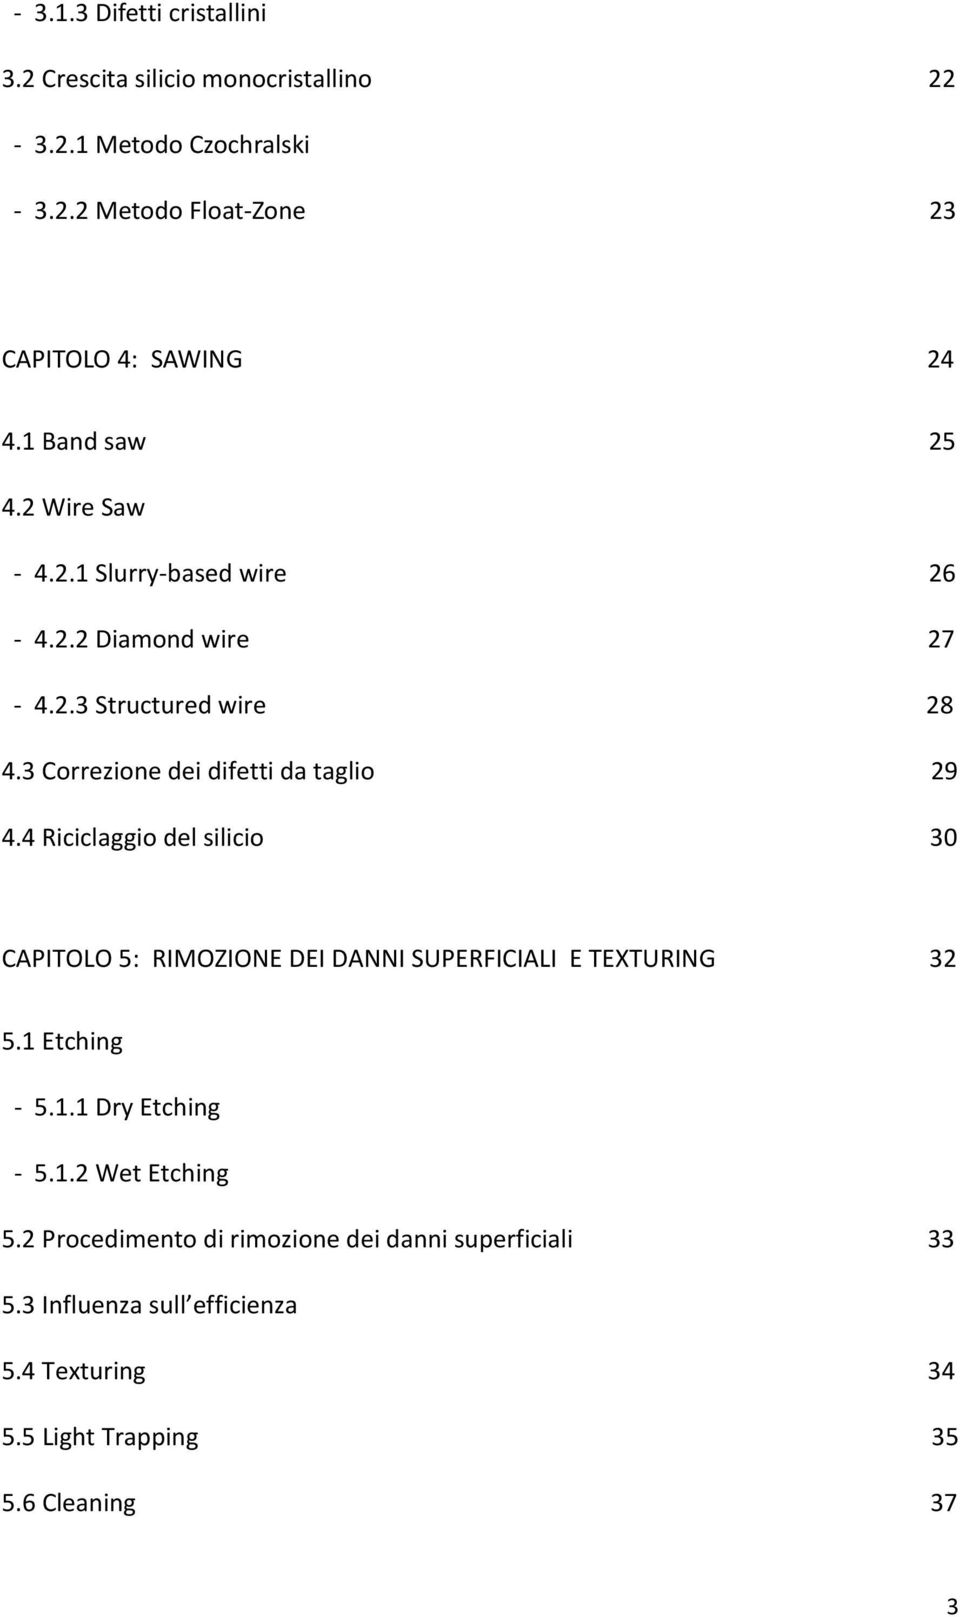 3 Correzione dei difetti da taglio 29 4.4 Riciclaggio del silicio 30 CAPITOLO 5: RIMOZIONE DEI DANNI SUPERFICIALI E TEXTURING 32 5.